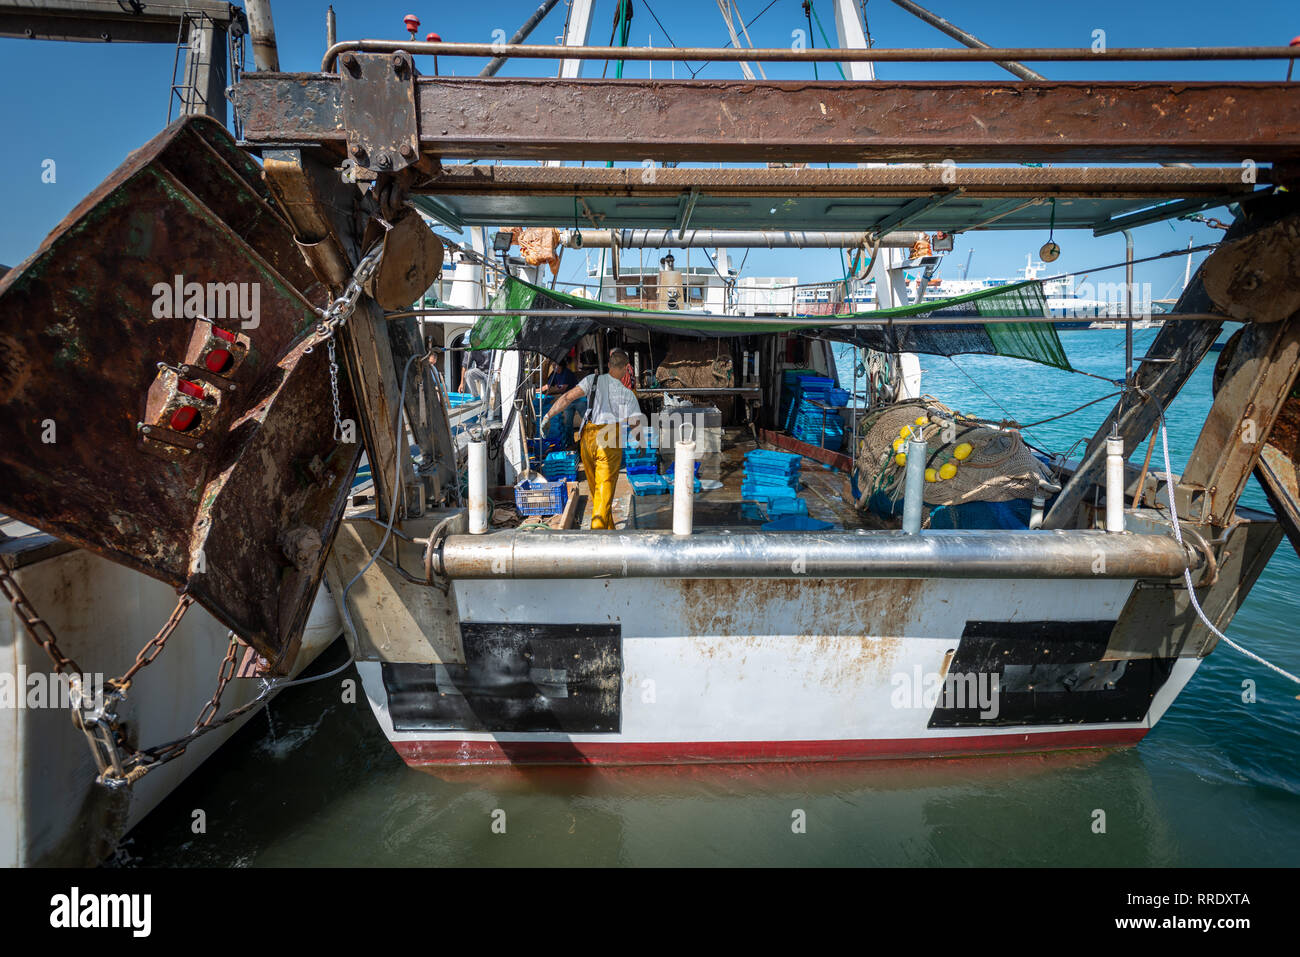 Un pescador vistiendo monos amarillos tidies equipos sobre la cubierta de un arrastrero de pesca en el puerto de Denia, España. Foto de stock